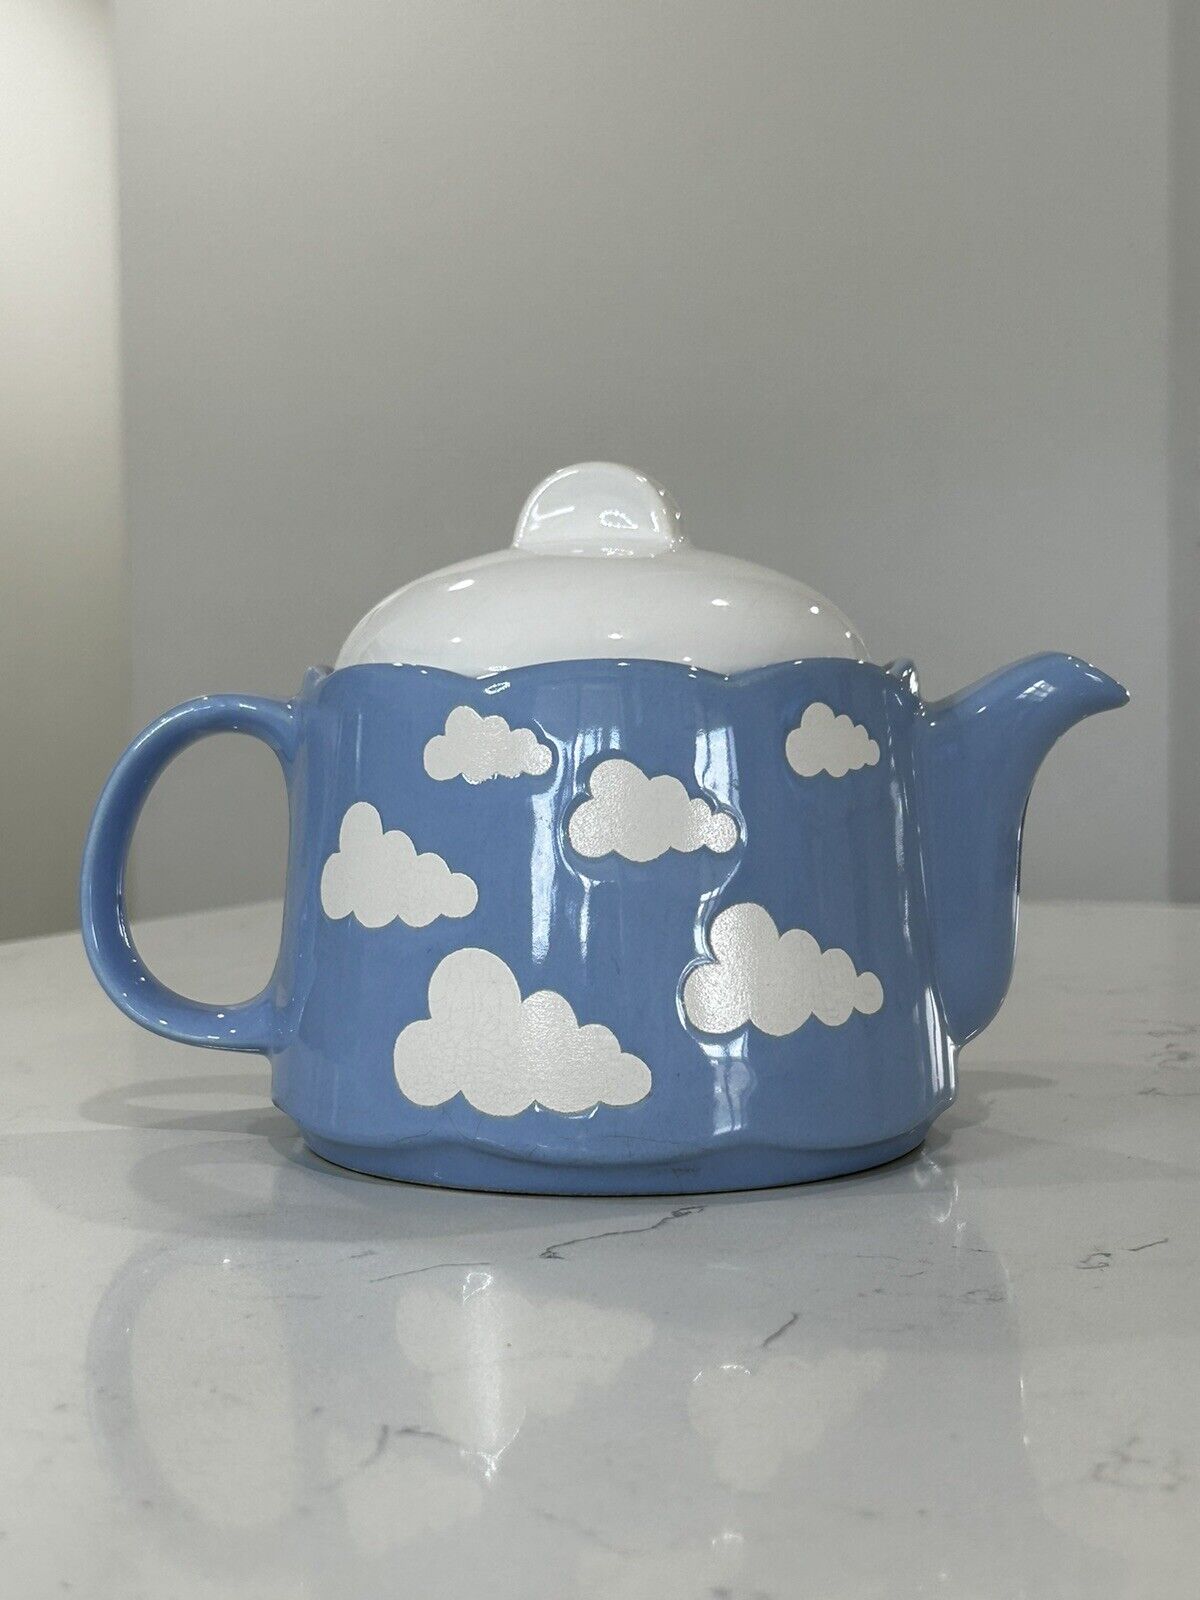 Vintage Waechtersbach Blue Clouds Teapot German 1970 ceramic porcelain 